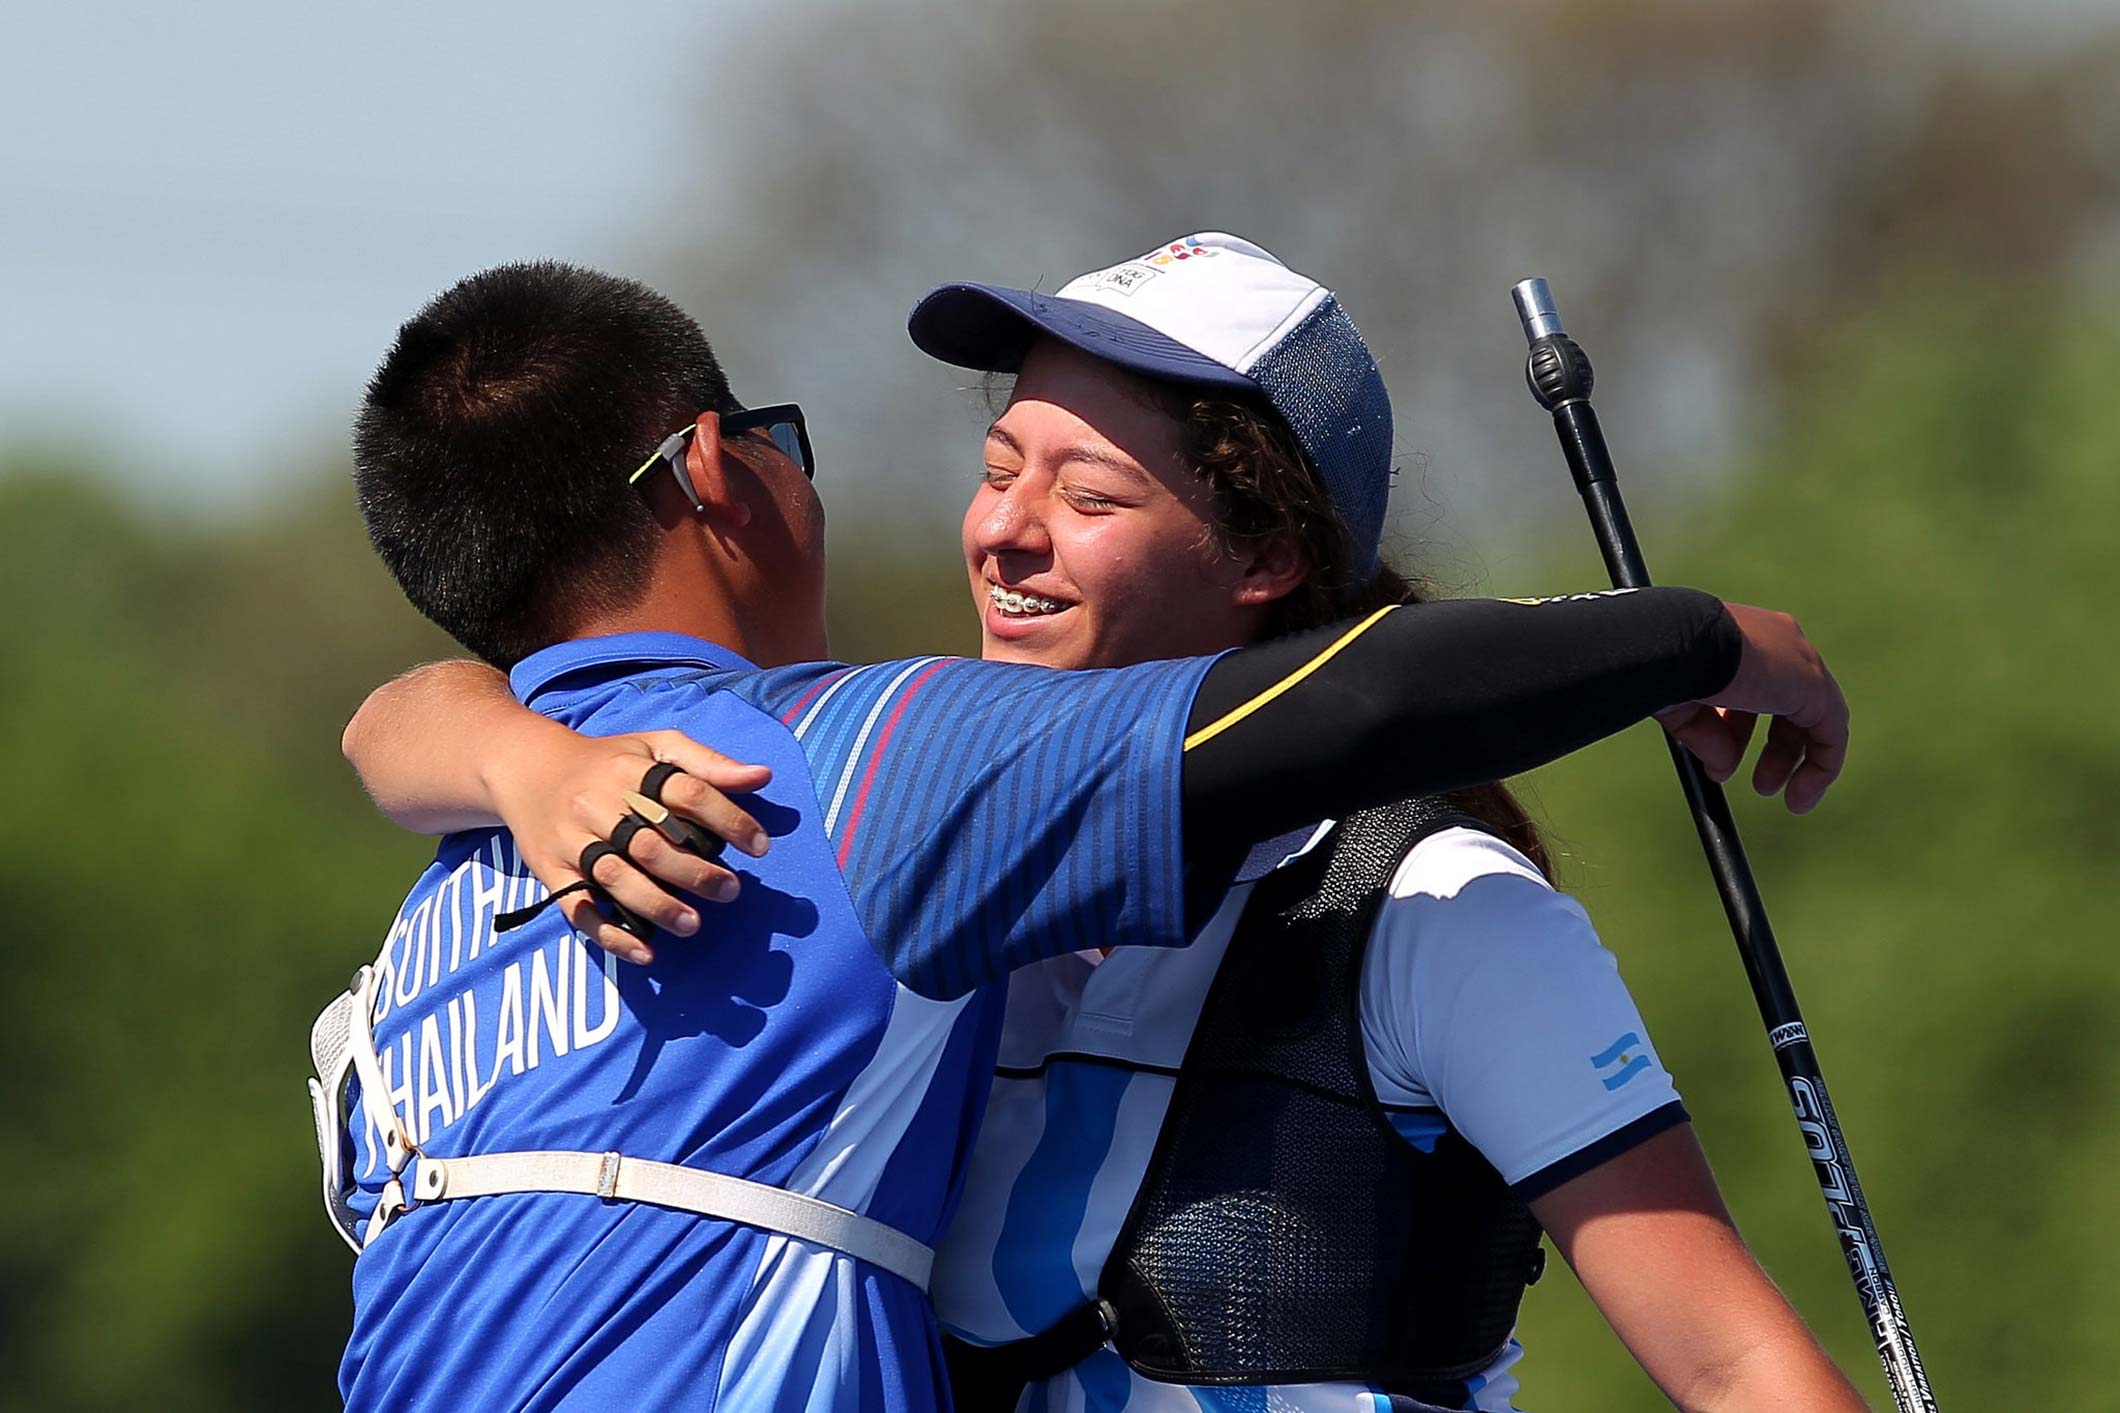 A hug to celebrate the silver finish. (Photo: Agustín Marcarián/Buenos Aires 2018)